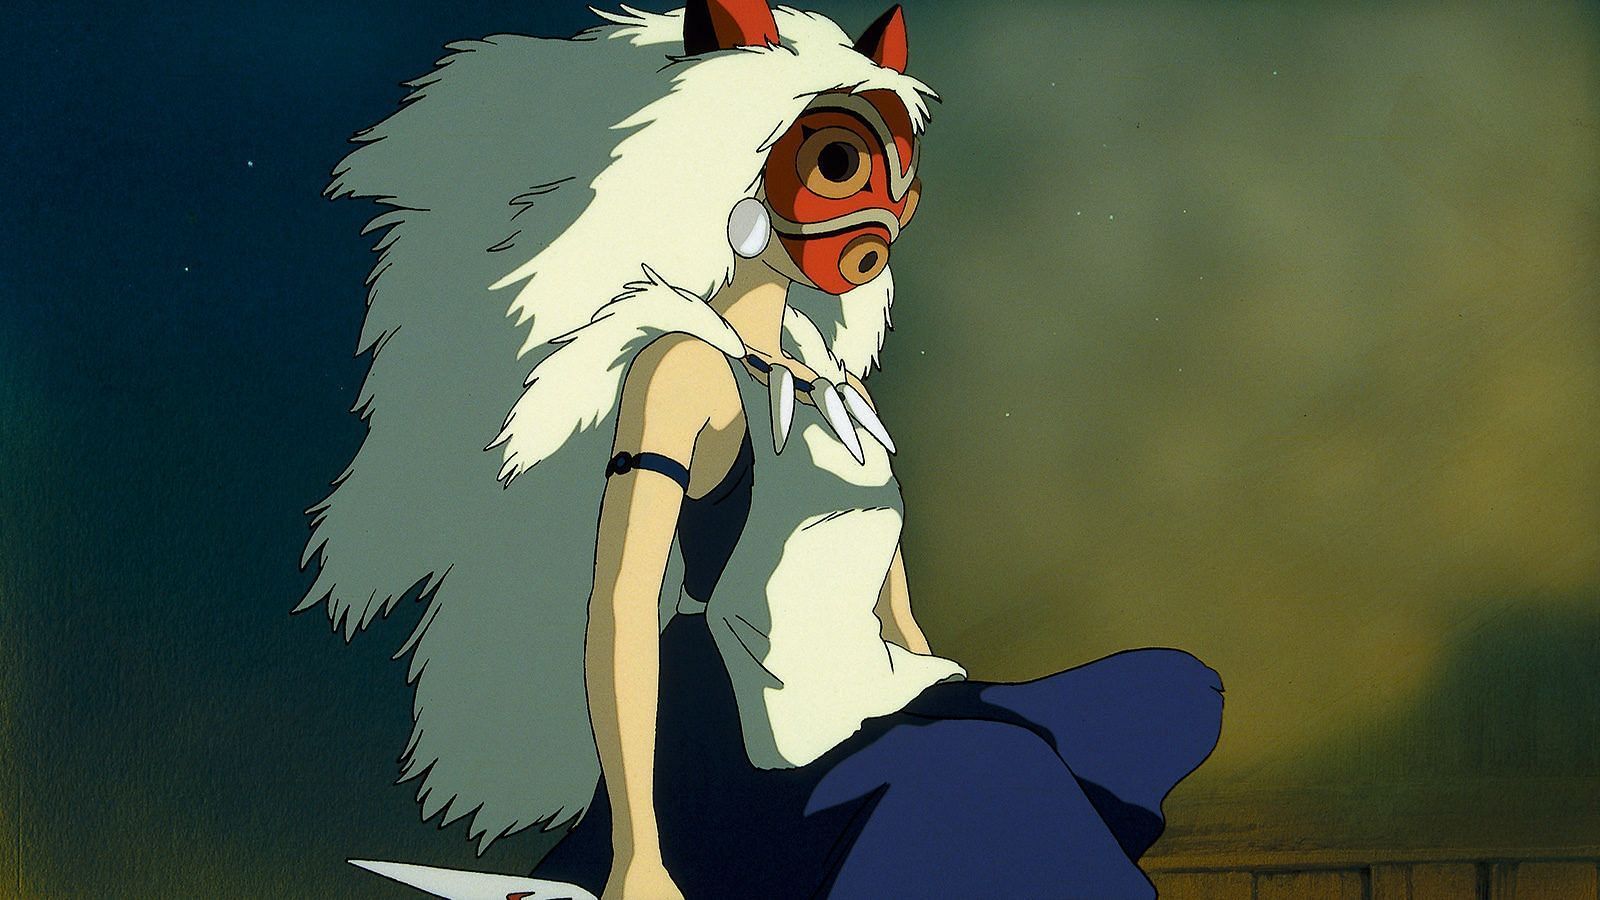 Princess Mononoke (Image via Studio Ghibli)